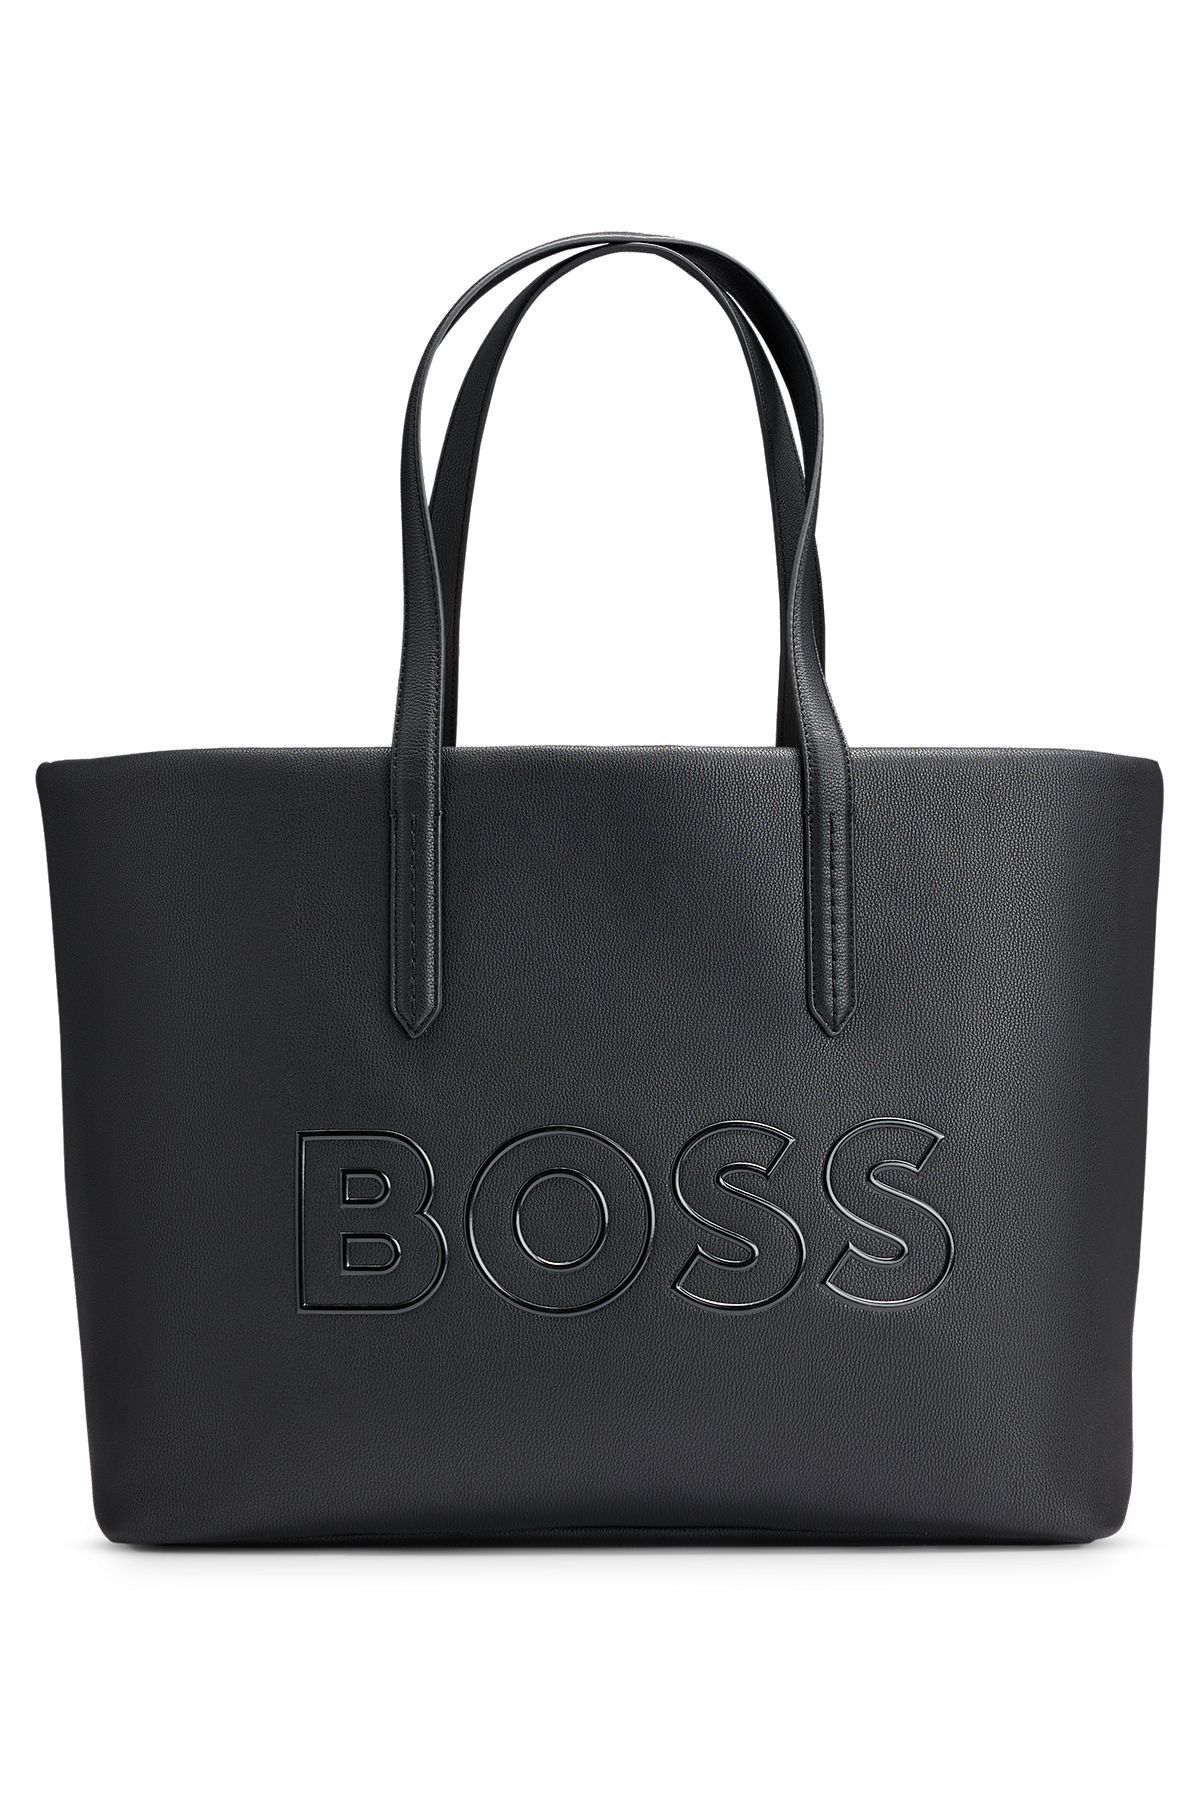 Bags Women\'s HUGO | BOSS